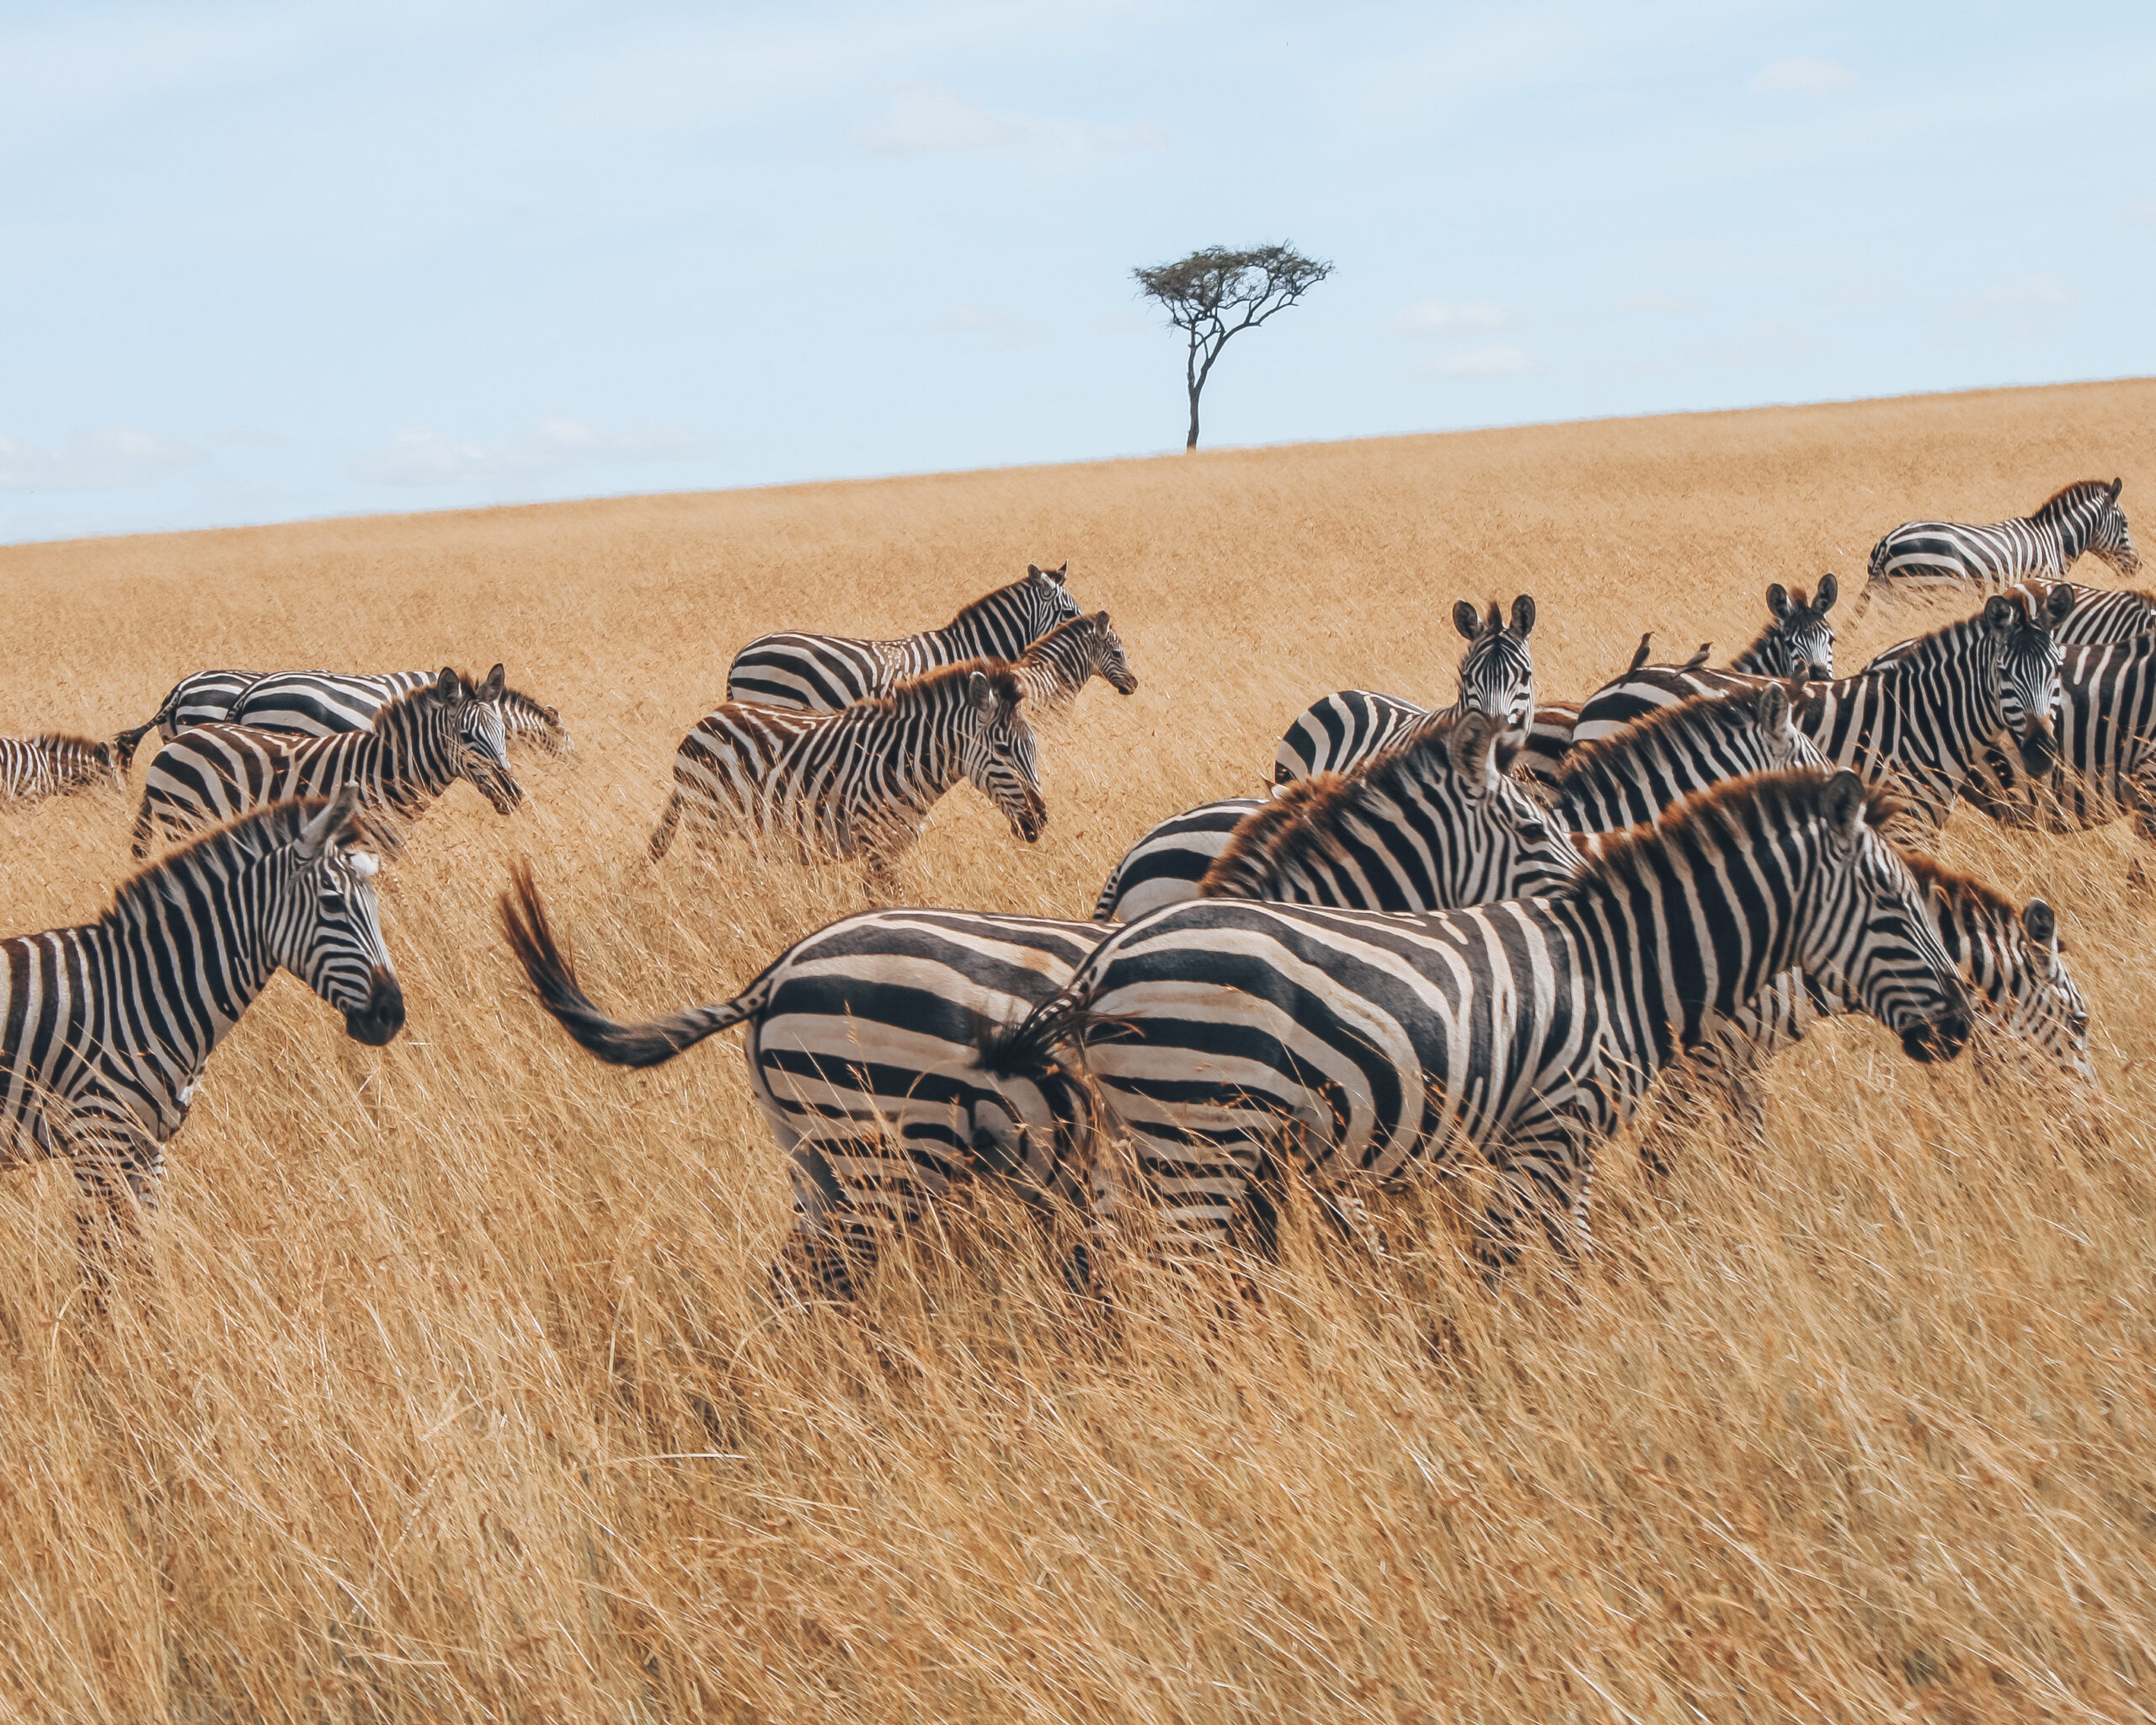 zebras savannah grass fields Africa